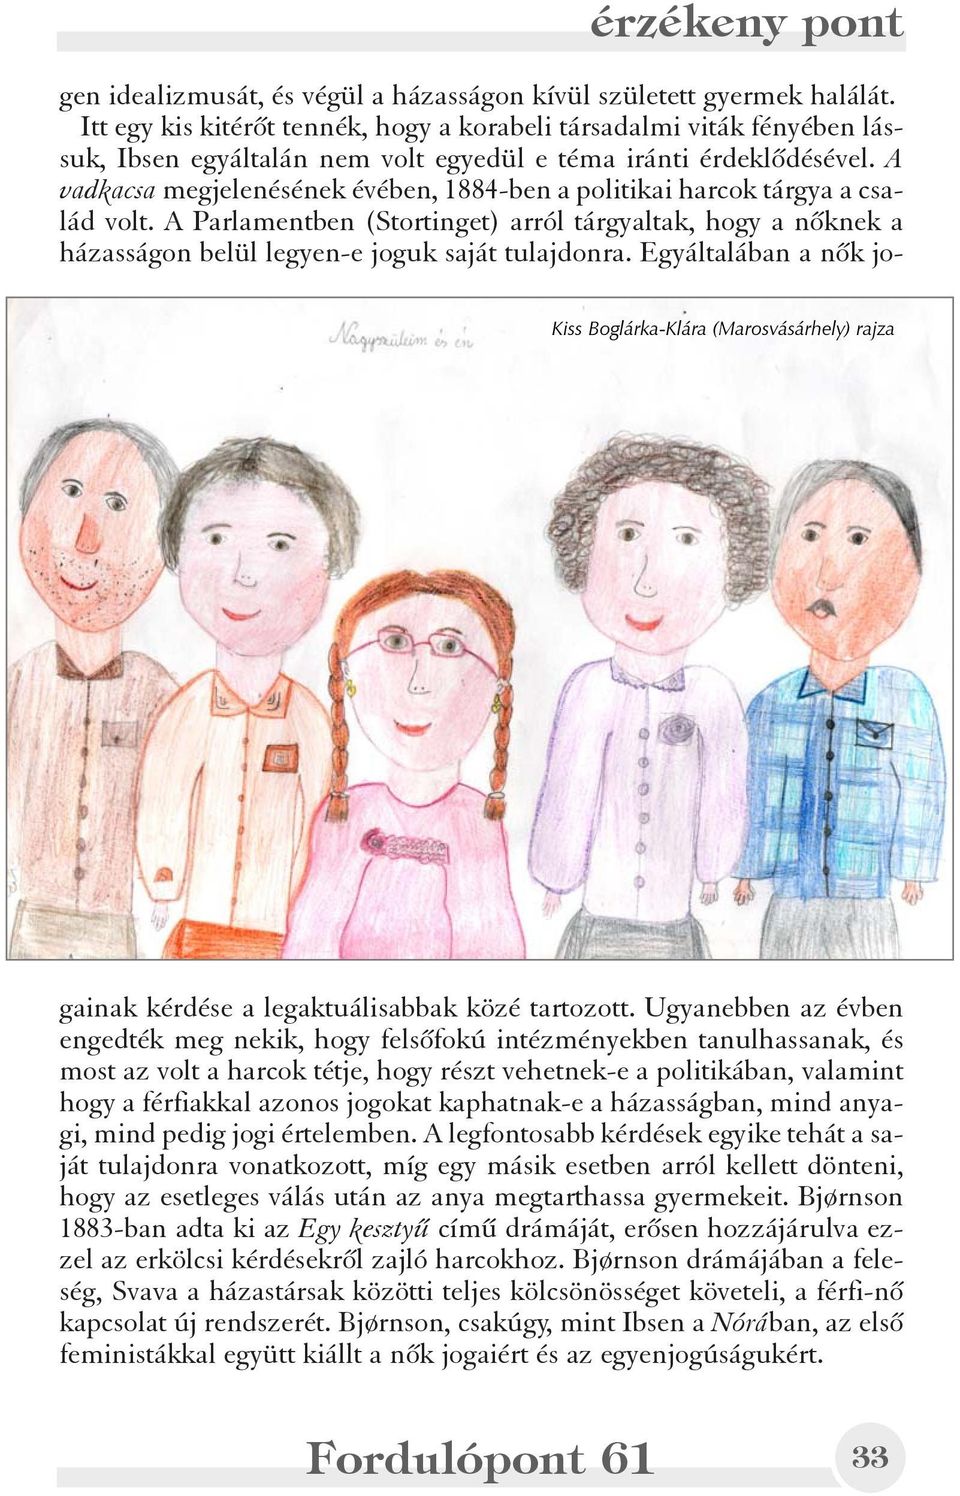 A vadkacsa megjelenésének évében, 1884-ben a politikai harcok tárgya a család volt. A Parlamentben (Stortinget) arról tárgyaltak, hogy a nõknek a házasságon belül legyen-e joguk saját tulajdonra.